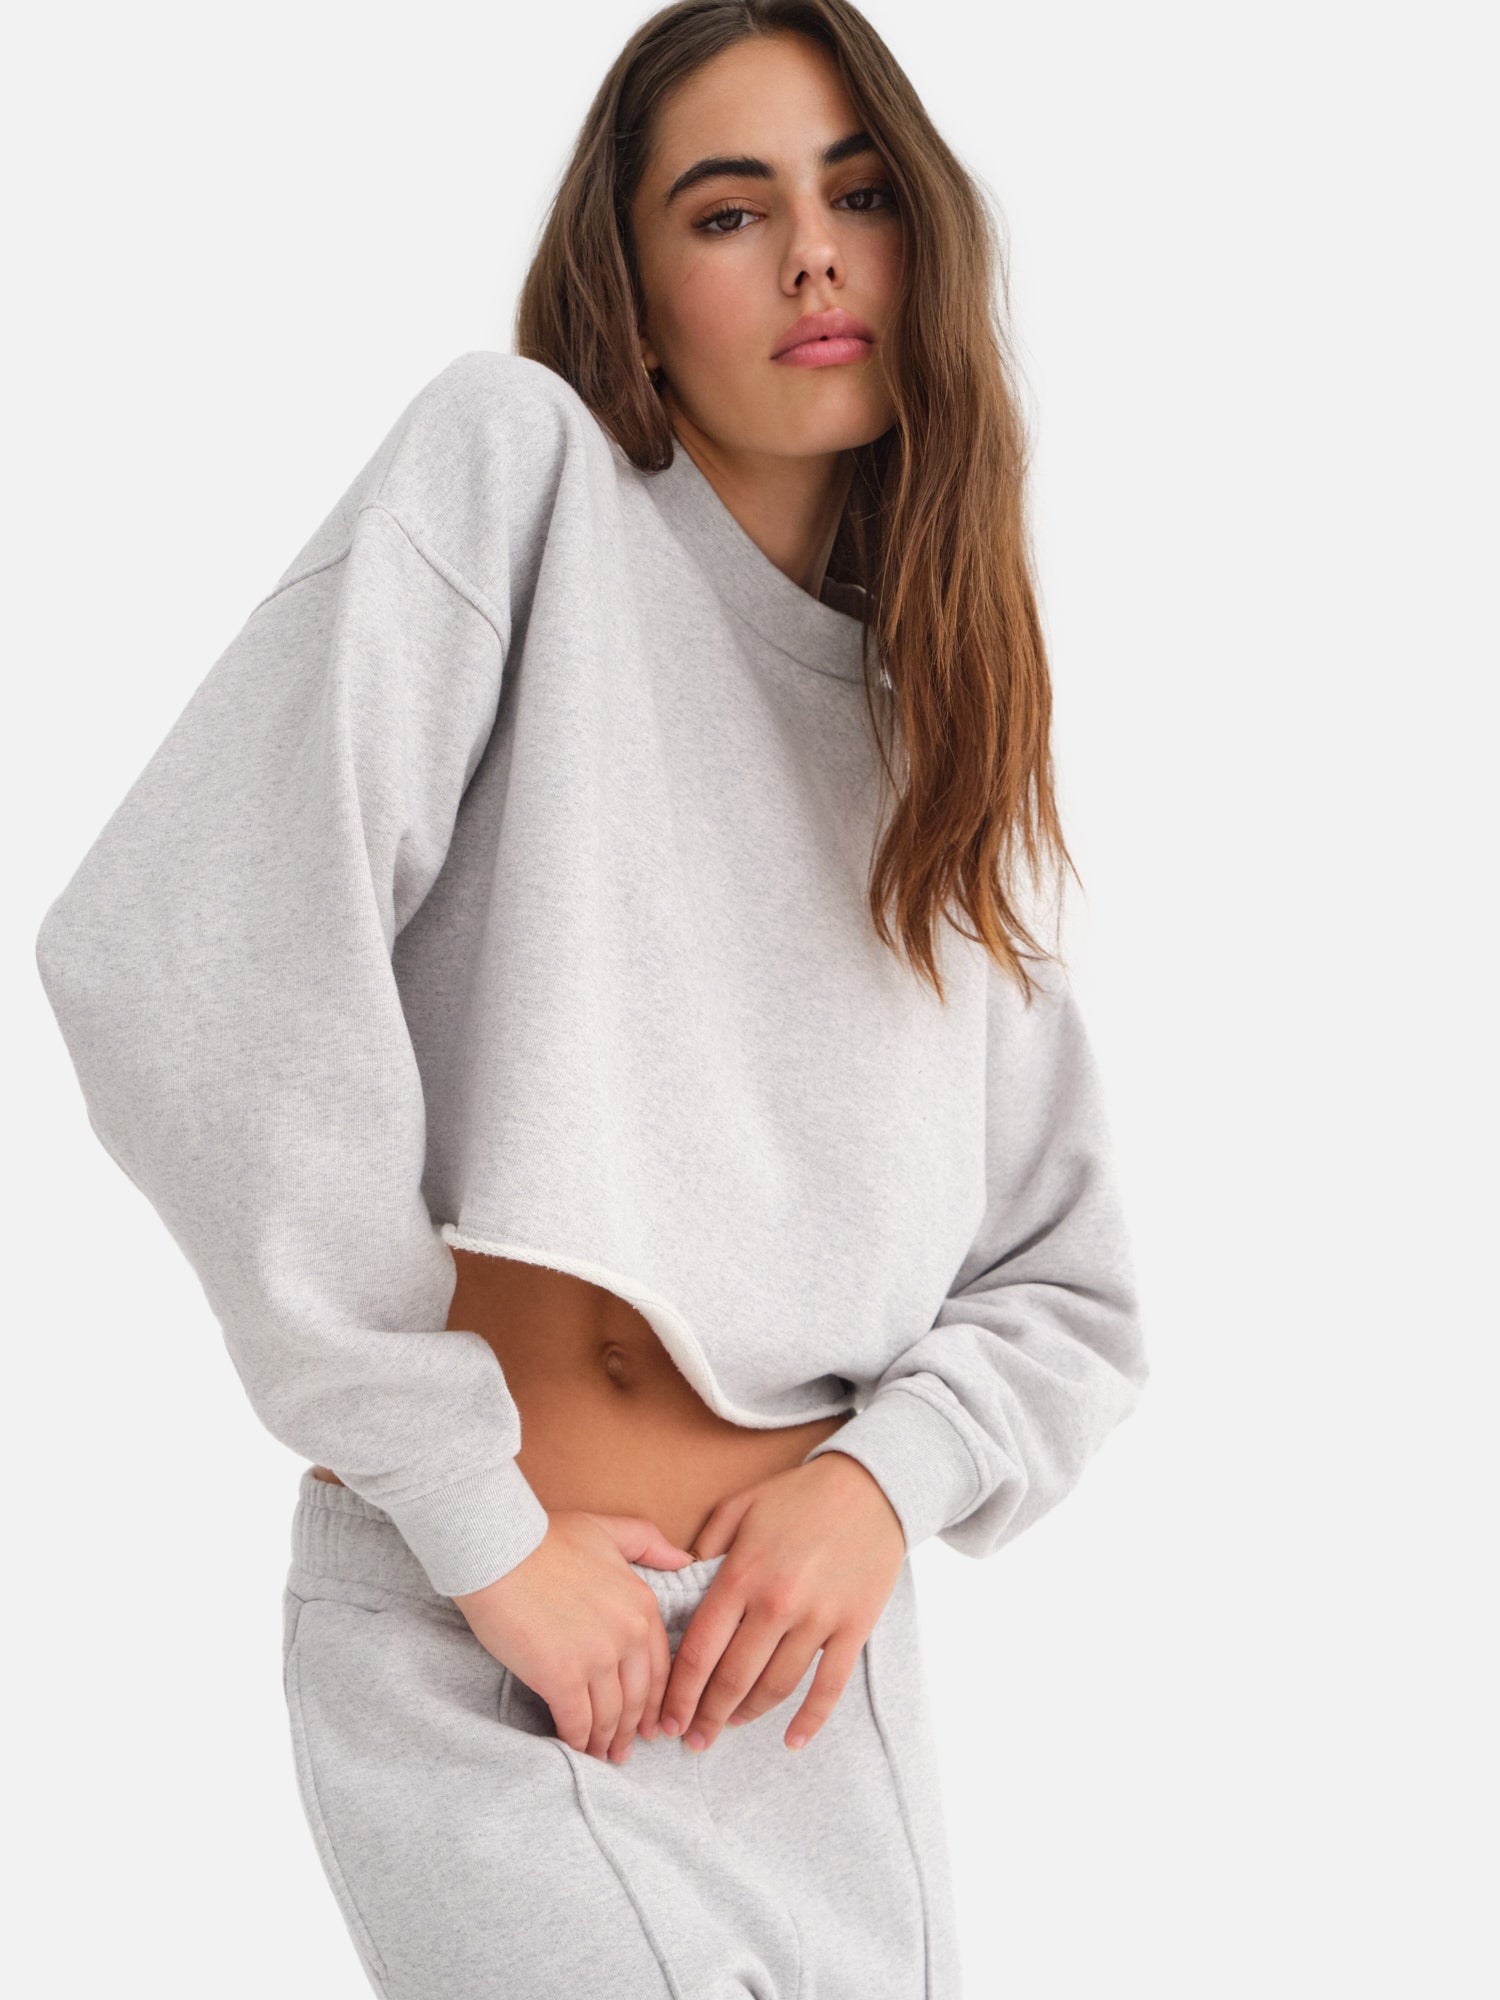 Oversized Cropped Fleece Sweatshirt